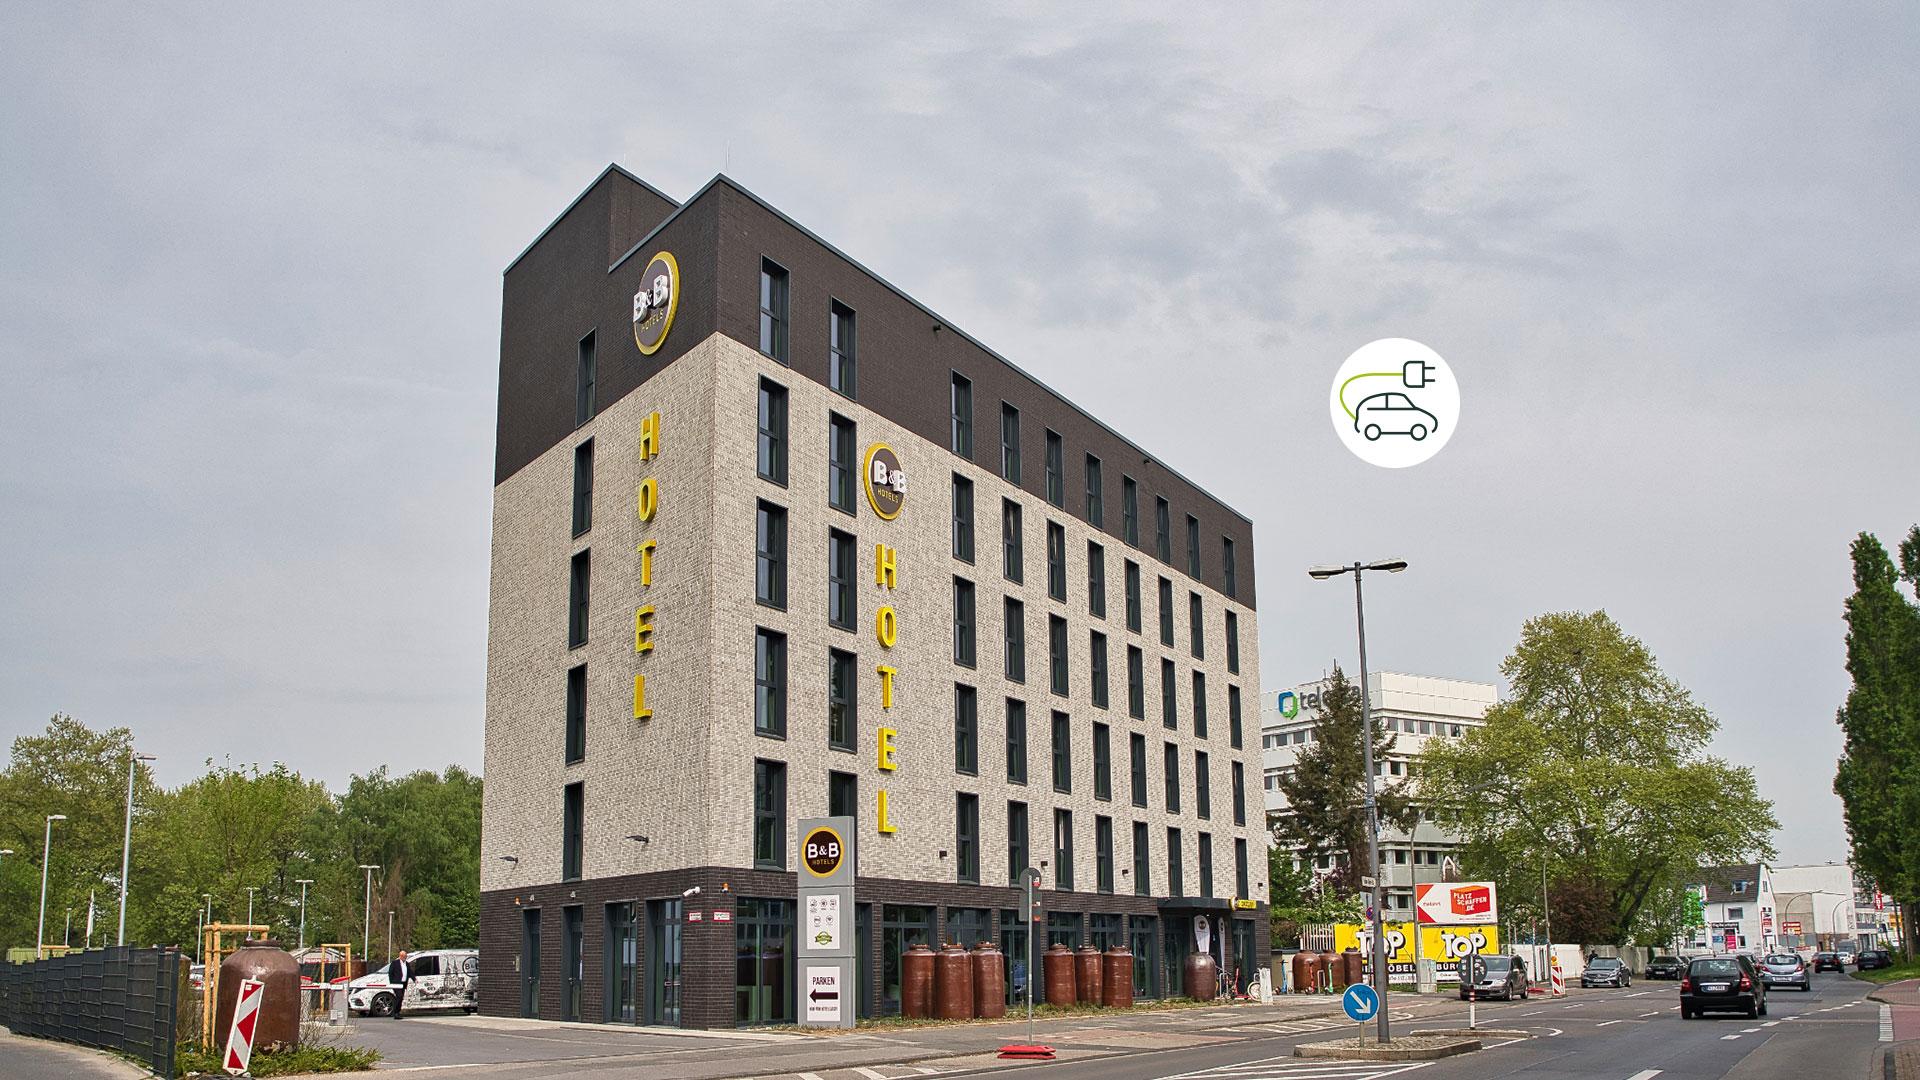 B&B HOTEL Köln-City, Oskar-Jäger-Straße 115 in Köln